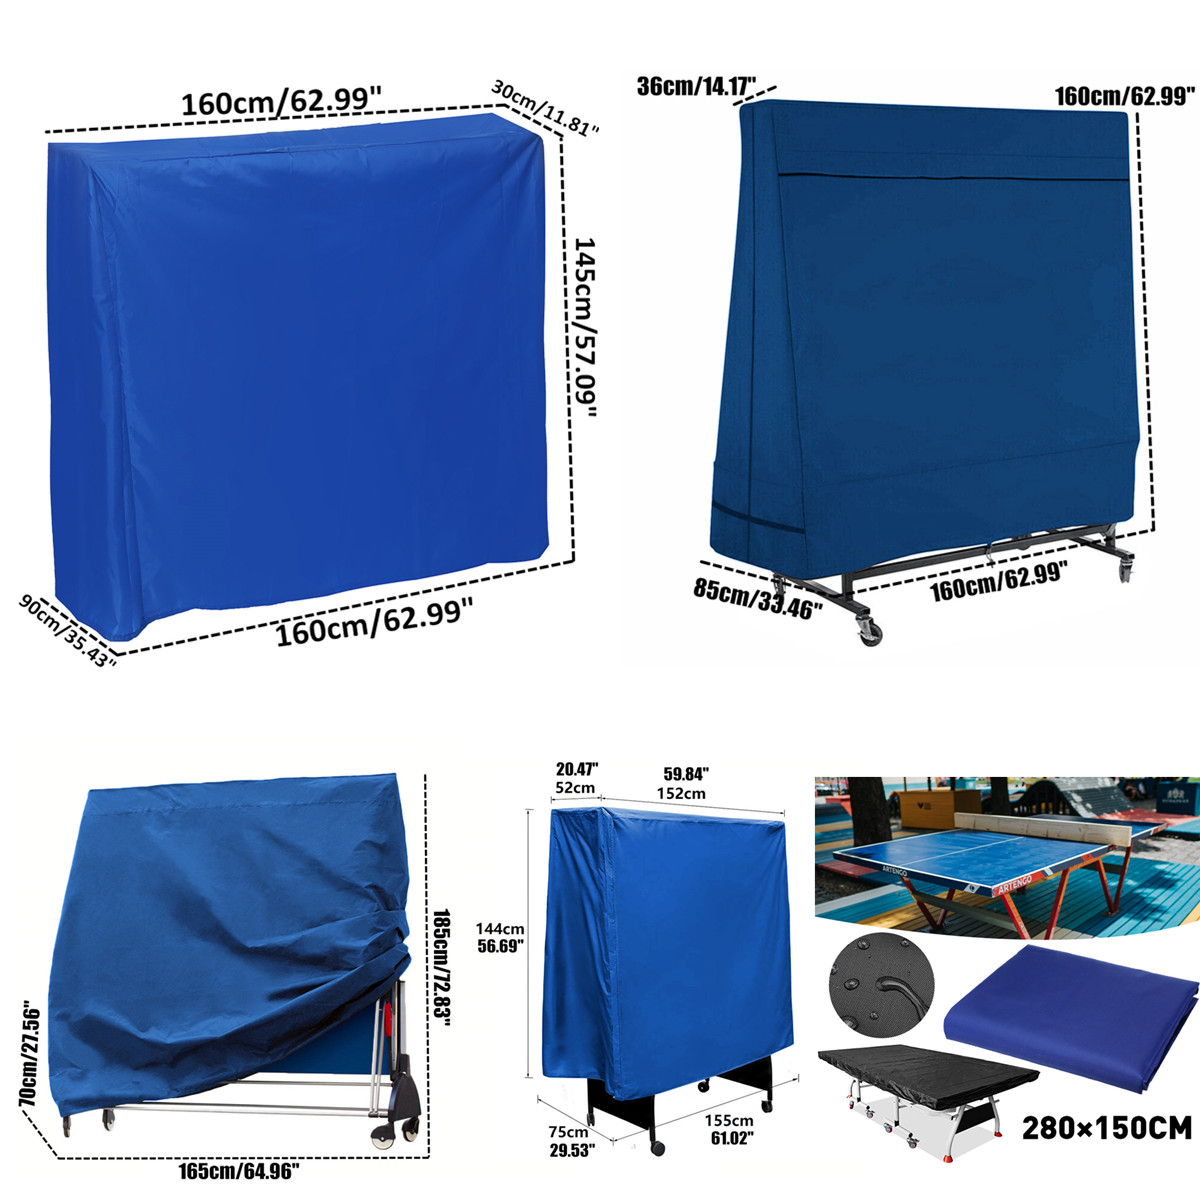 Black-Table-Tennis-Protector-160cm-Waterproof-Dustproof-Ping-Pong-Table-Storage-Cover-1637115-7